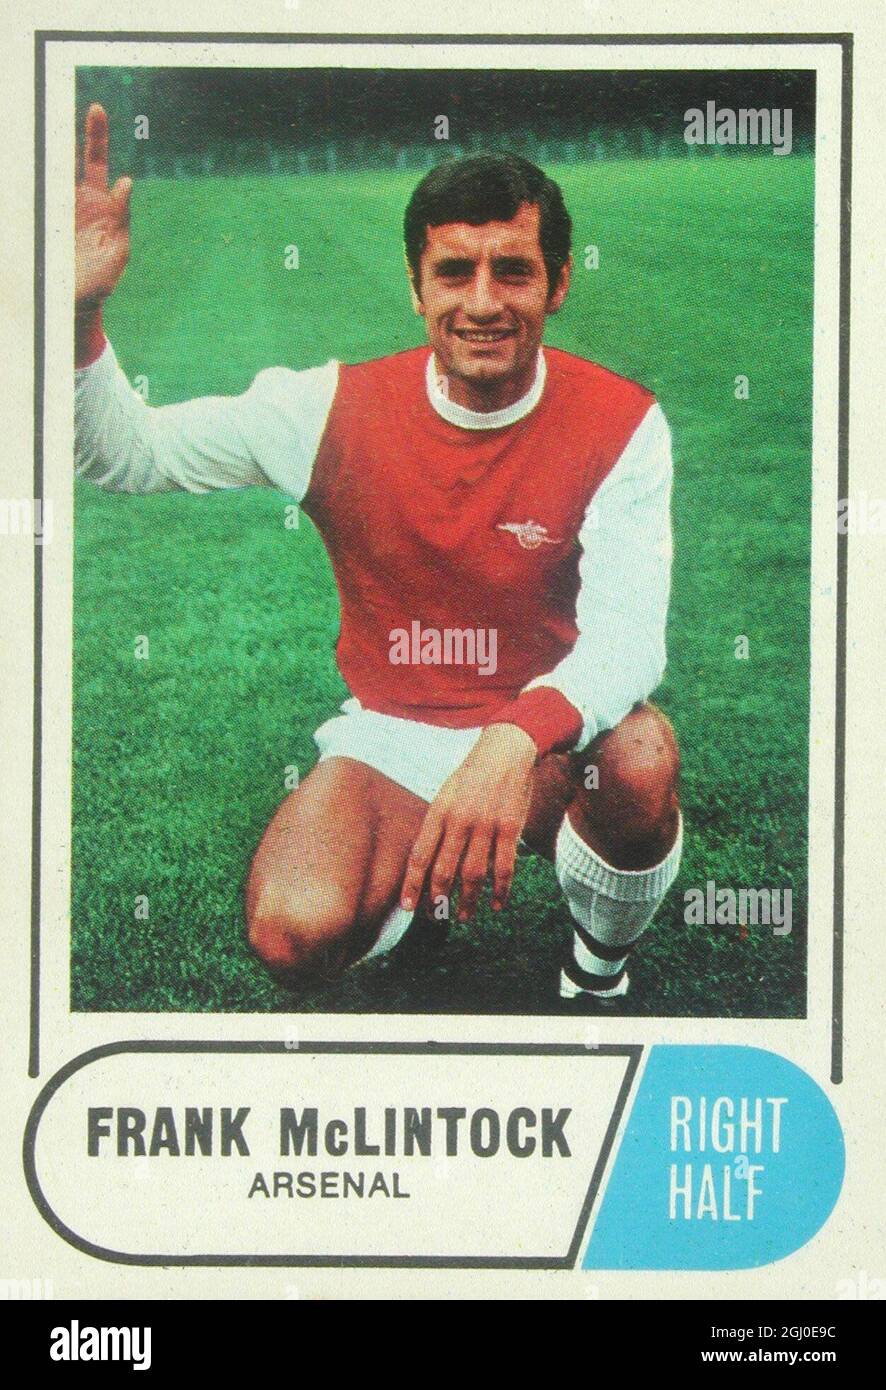 Frank McLintock - der Kapitän des Arsenal Arsenal, McLintock, wurde im Oktober 1964 von Leicester für £80,000 verlegt. Drei Mal für Schottland gedeckelt, hat sein angreifender Stil des Flügelhalbspiels einige denkwürdige Tore hervorgebracht. Stockfoto